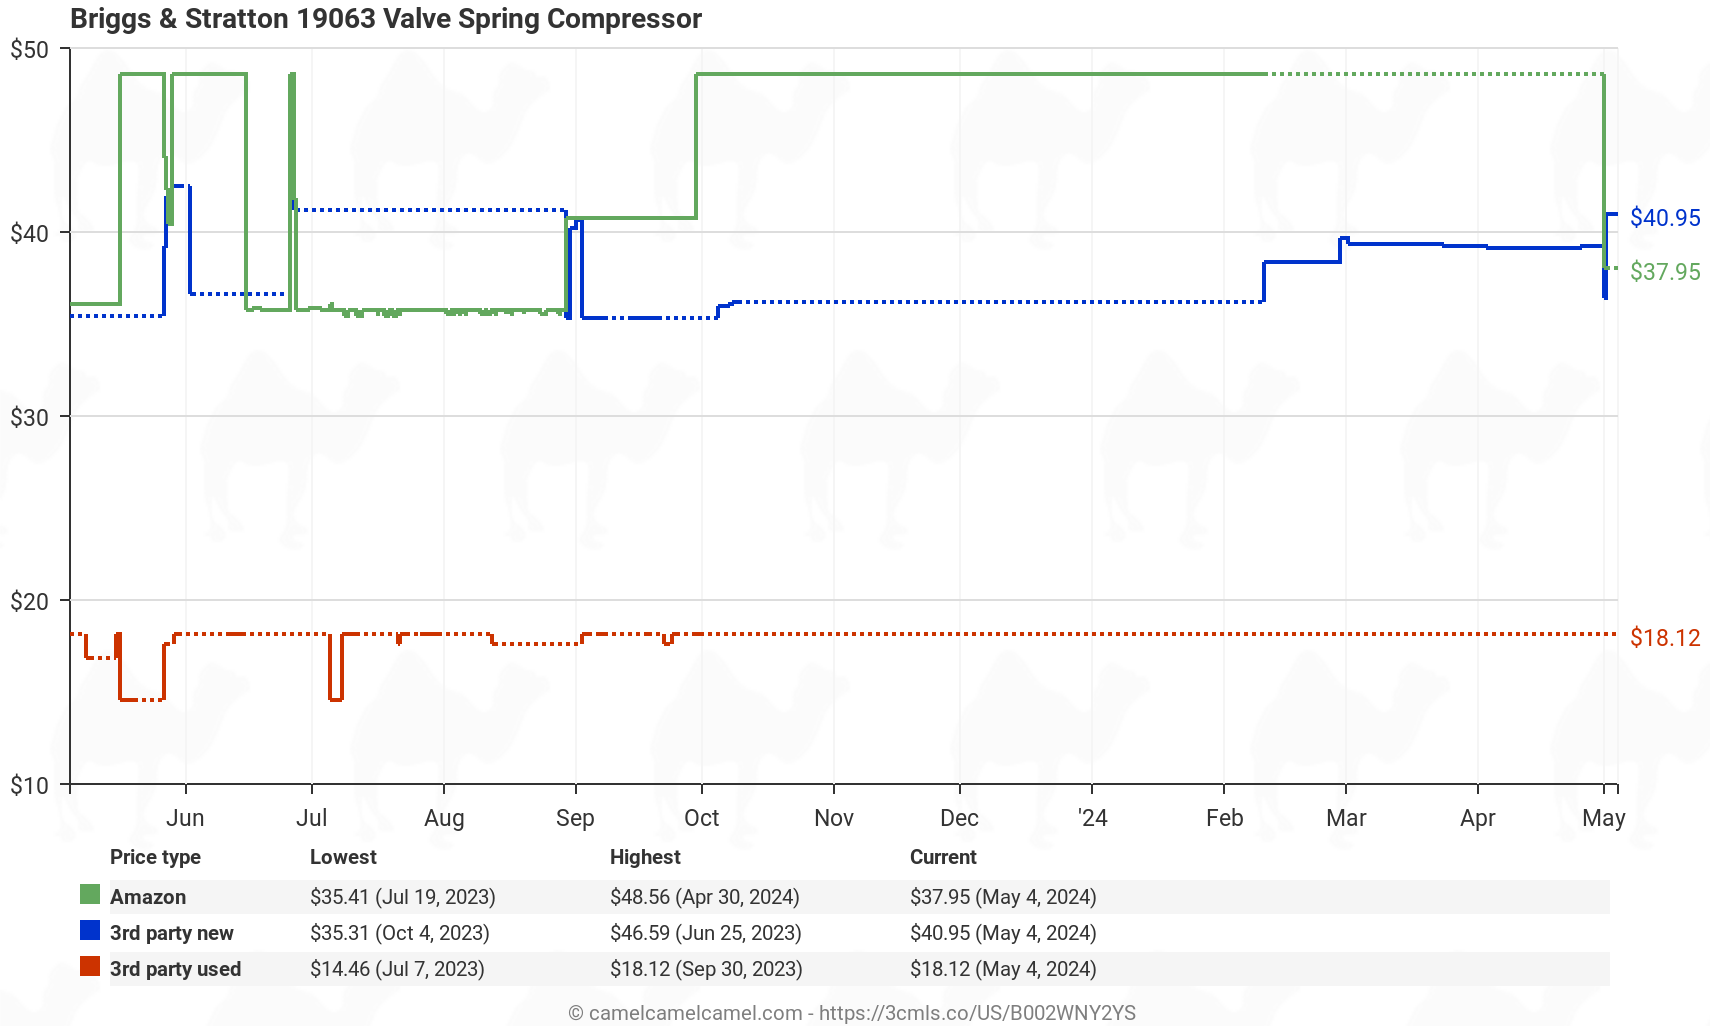 Briggs & Stratton 19063 Valve Spring Compressor - Price History: B002WNY2YS